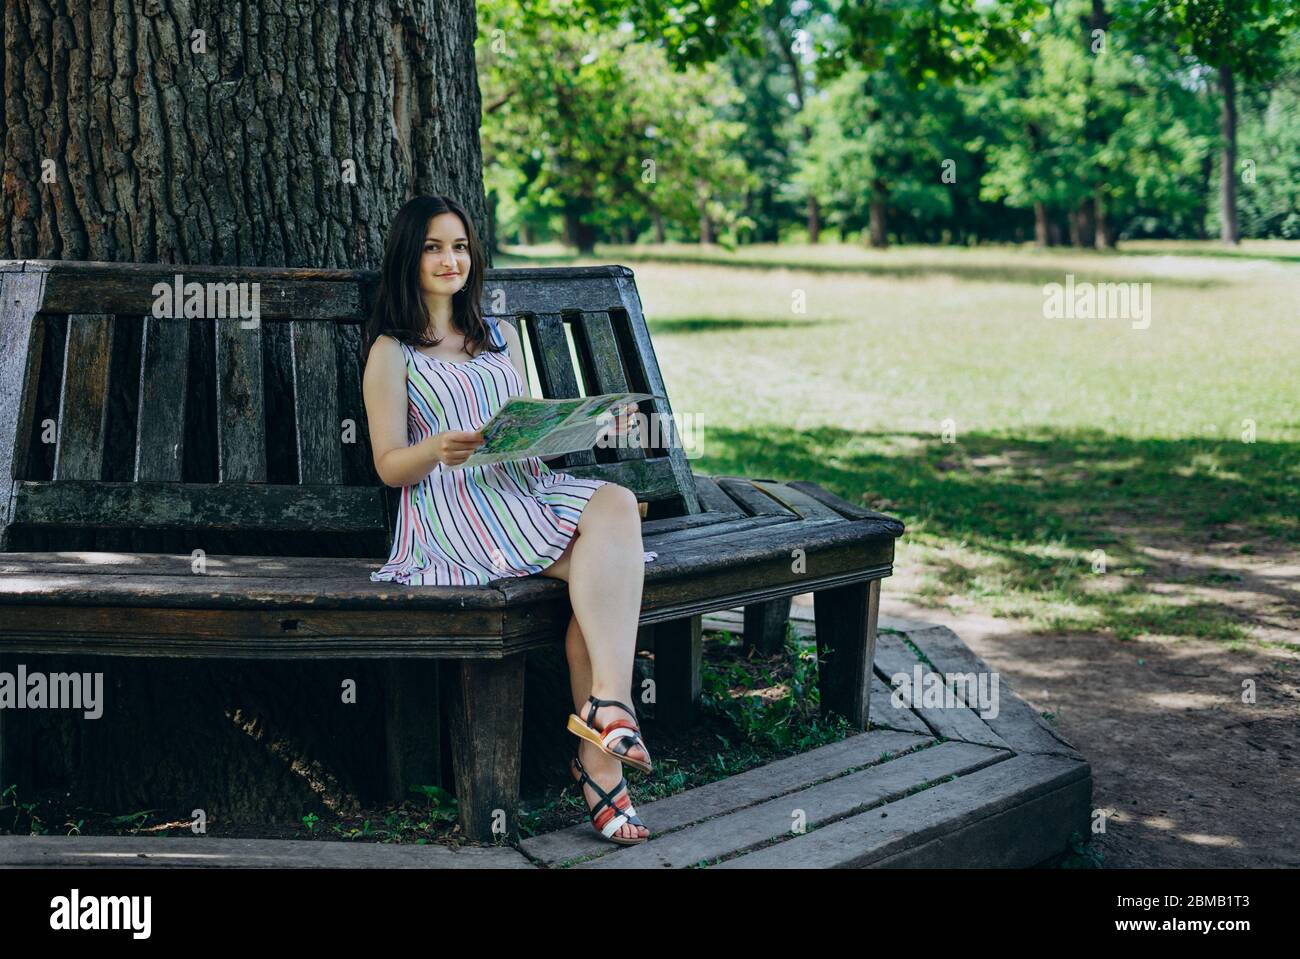 Une jeune fille dans une gireuse assise sur un banc de parc. Fille avec une carte touristique assise sur un banc en bois. Belle fille avec une carte touristique dans le parc o Banque D'Images